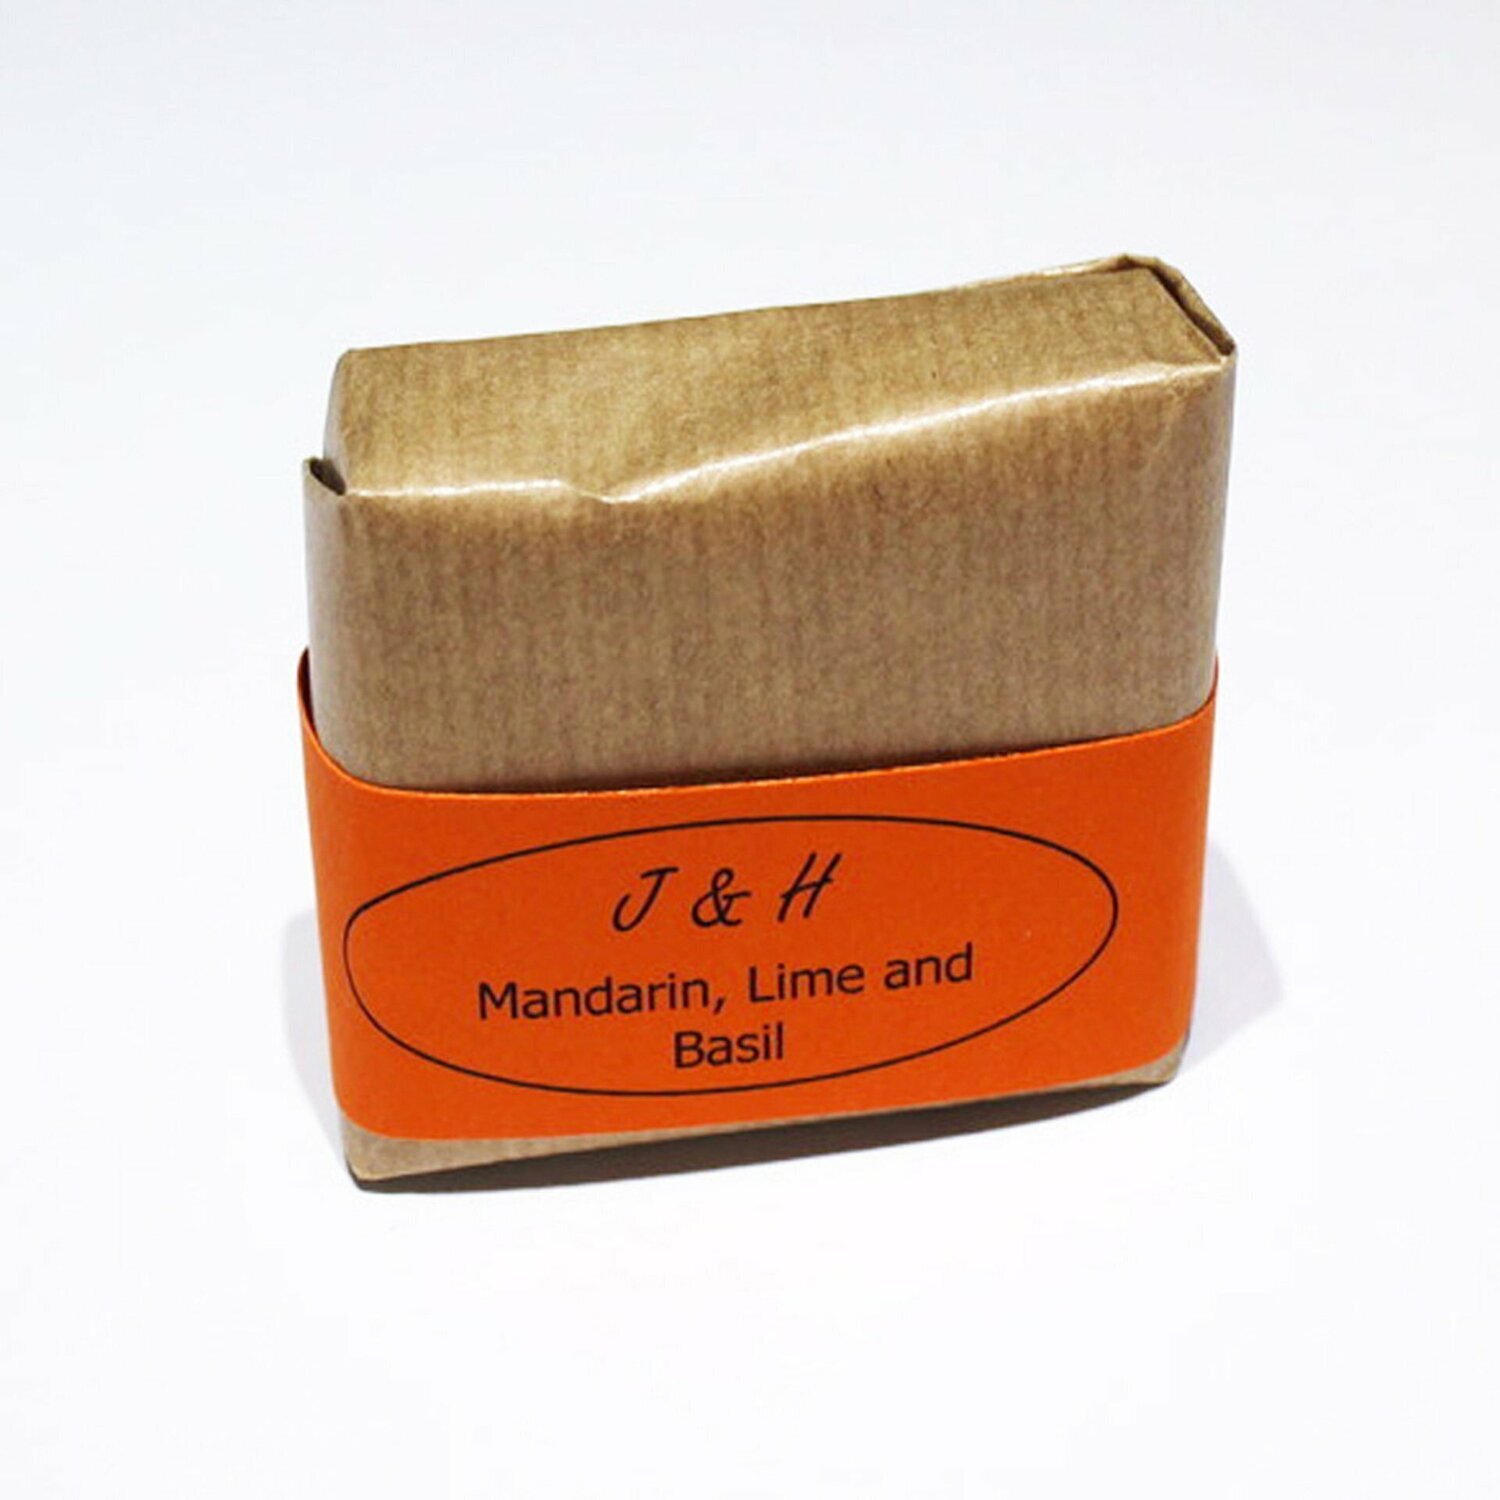 Mandarin, Lime and Basil Soap Bar by J&H